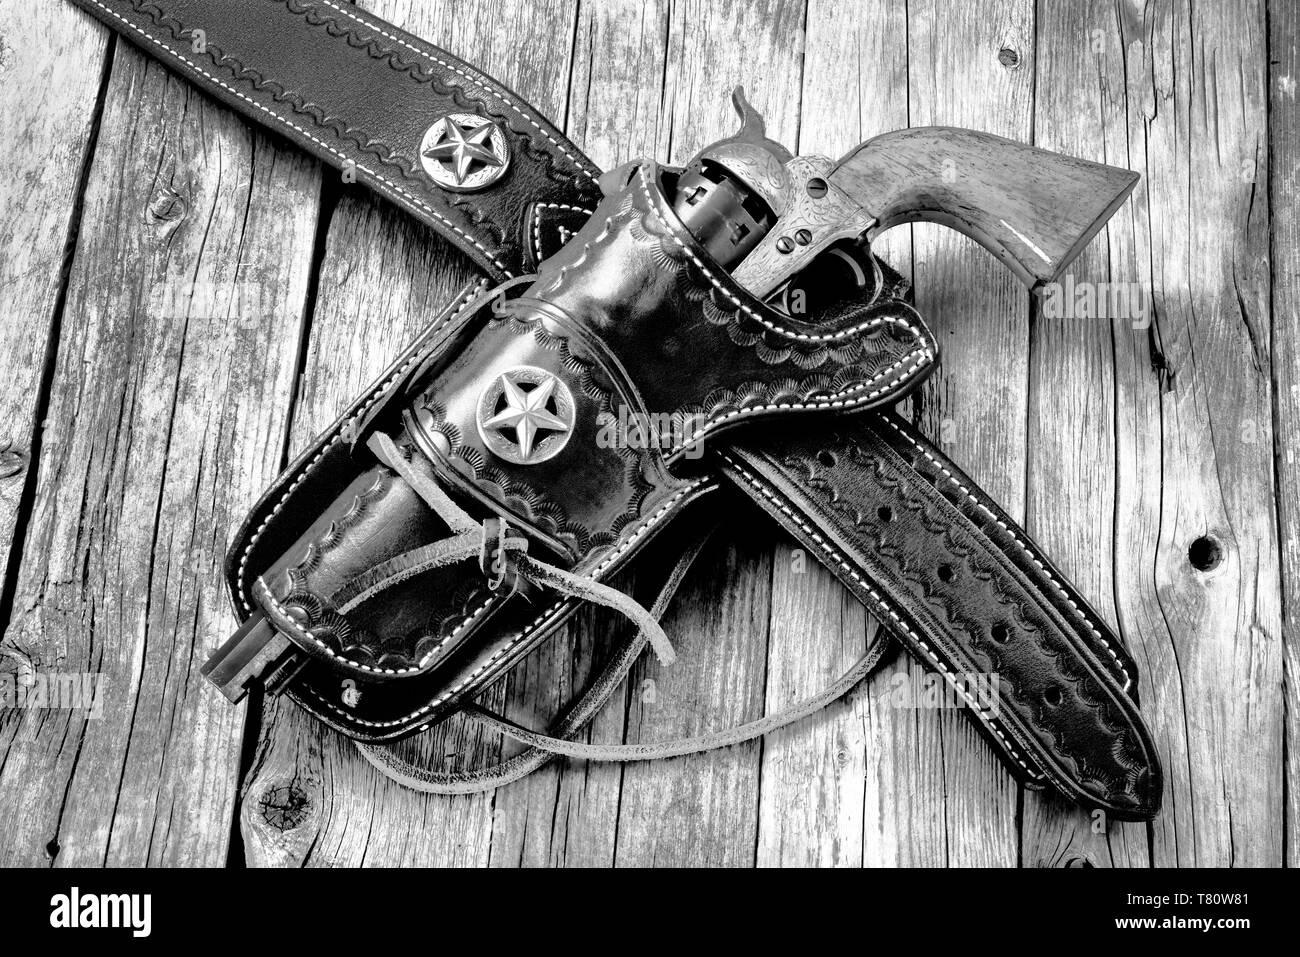 Meubles anciens et de l'ouest pistolet dans son étui en cuir en noir et blanc. Banque D'Images